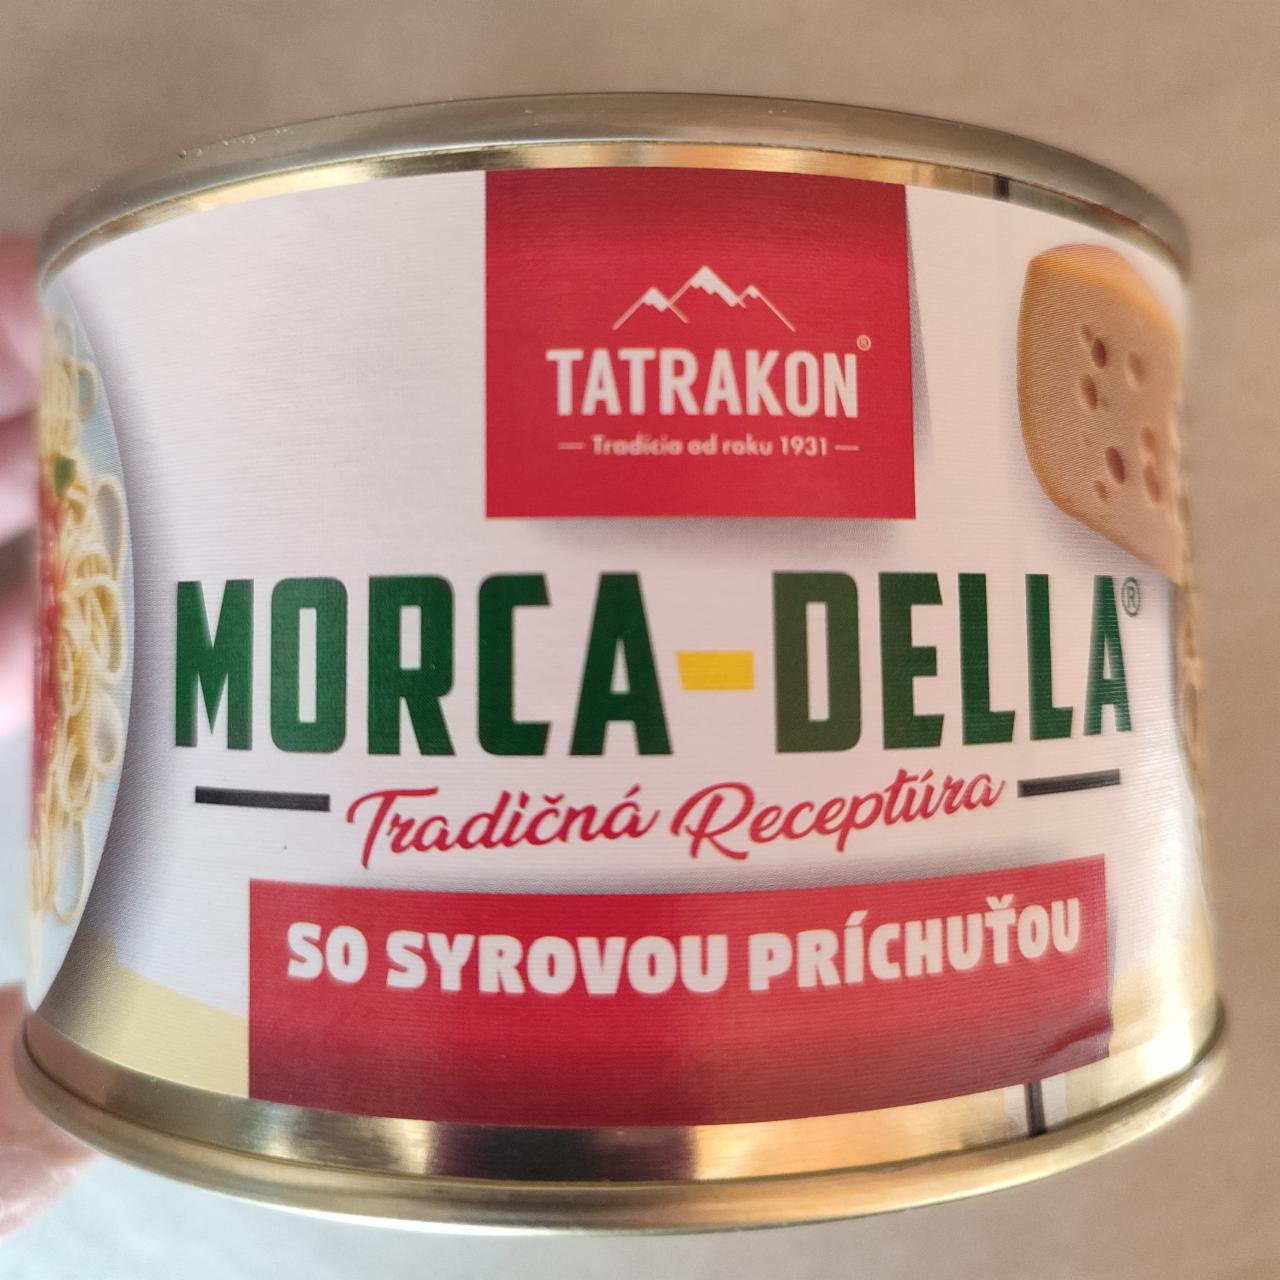 Fotografie - Morca-Della Tradičná receptúra so syrovou príchuťou Tatrakon